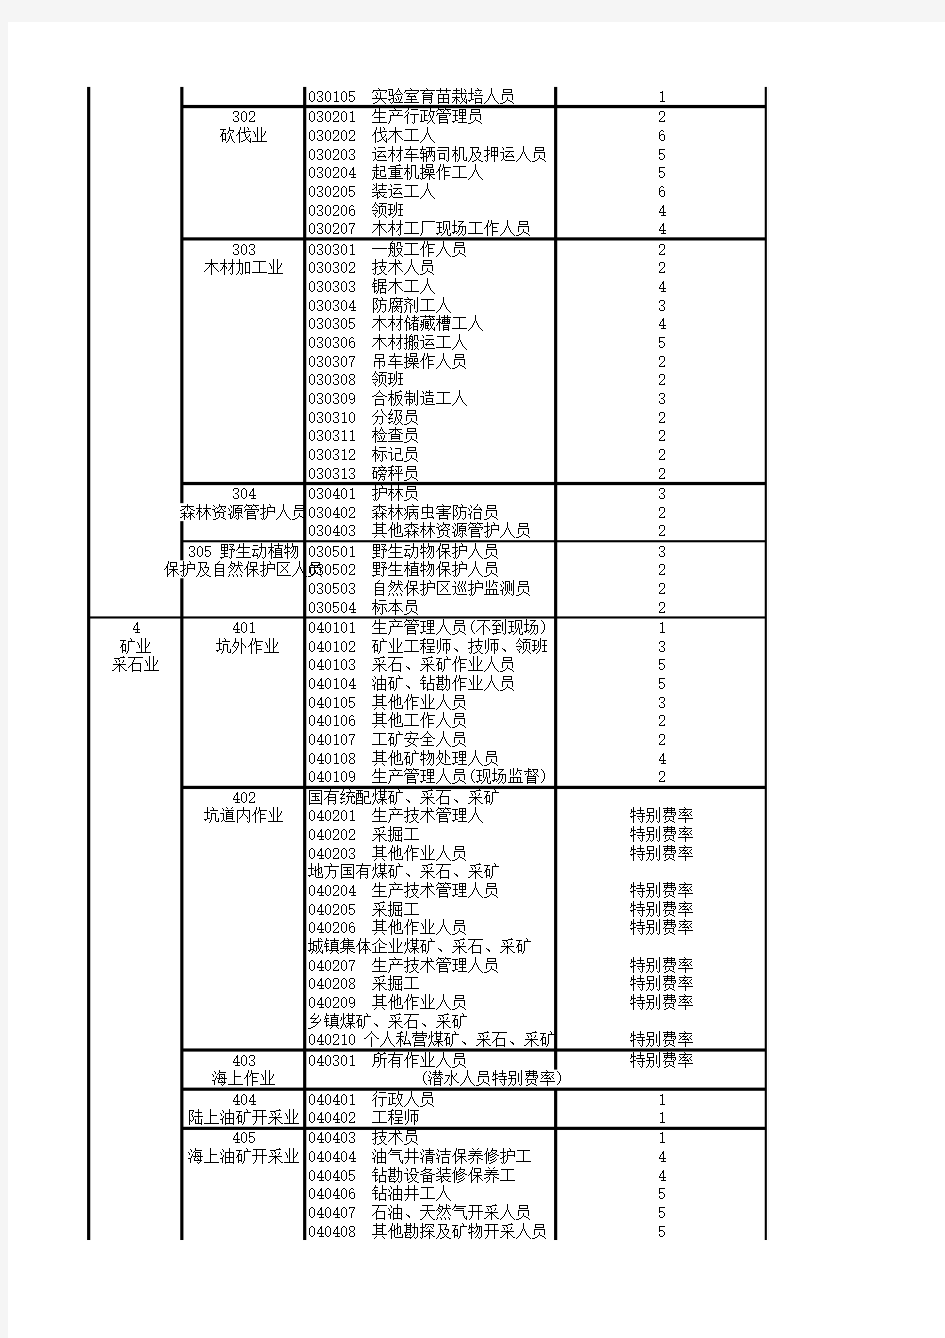 1-中国人寿财产保险股份有限公司意外伤害保险职业分类表(2014)